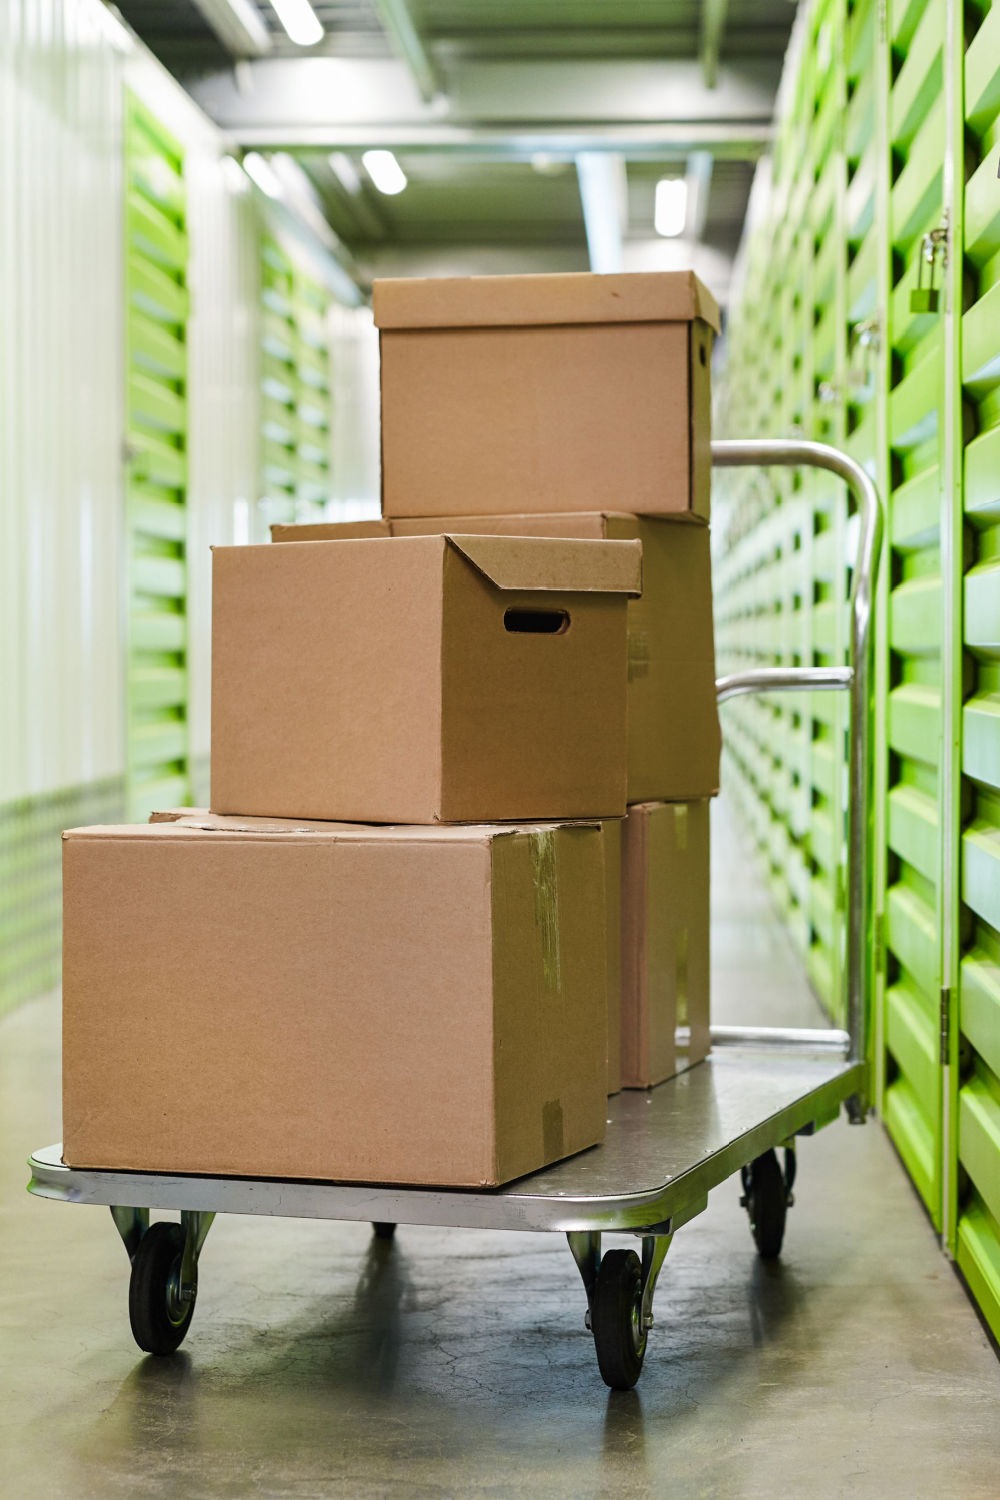 Movers In Arlington, VA Provide A Storage Unit